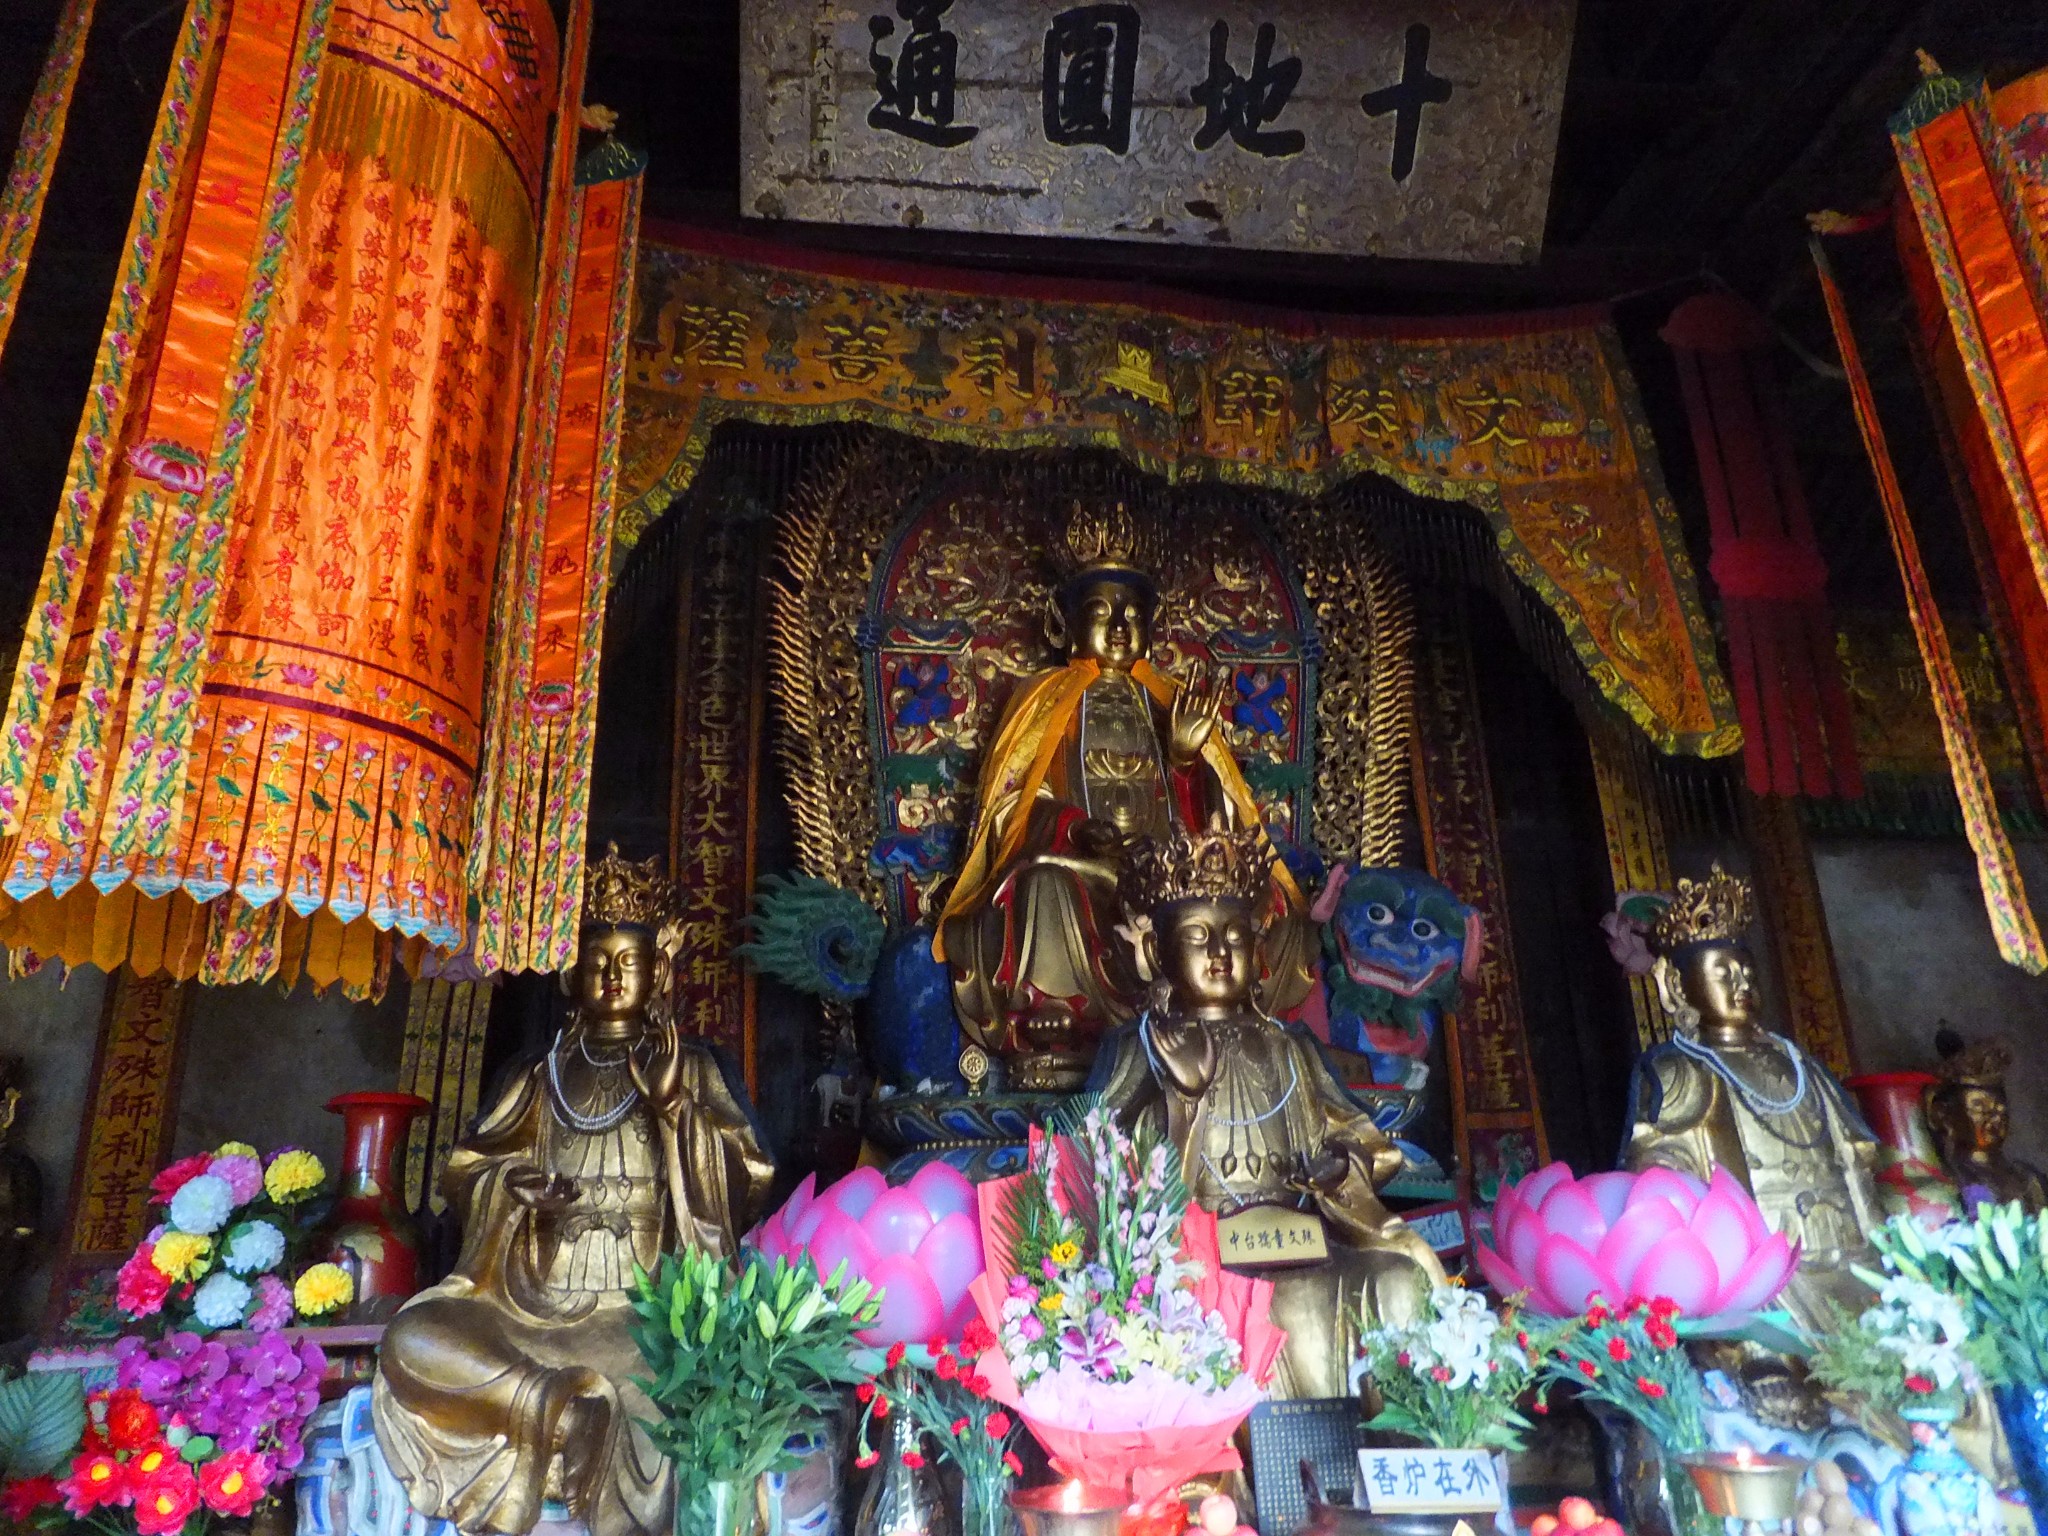 大文殊殿内六尊文殊菩萨的塑像造型各自不同,可以说是五台山文殊像的